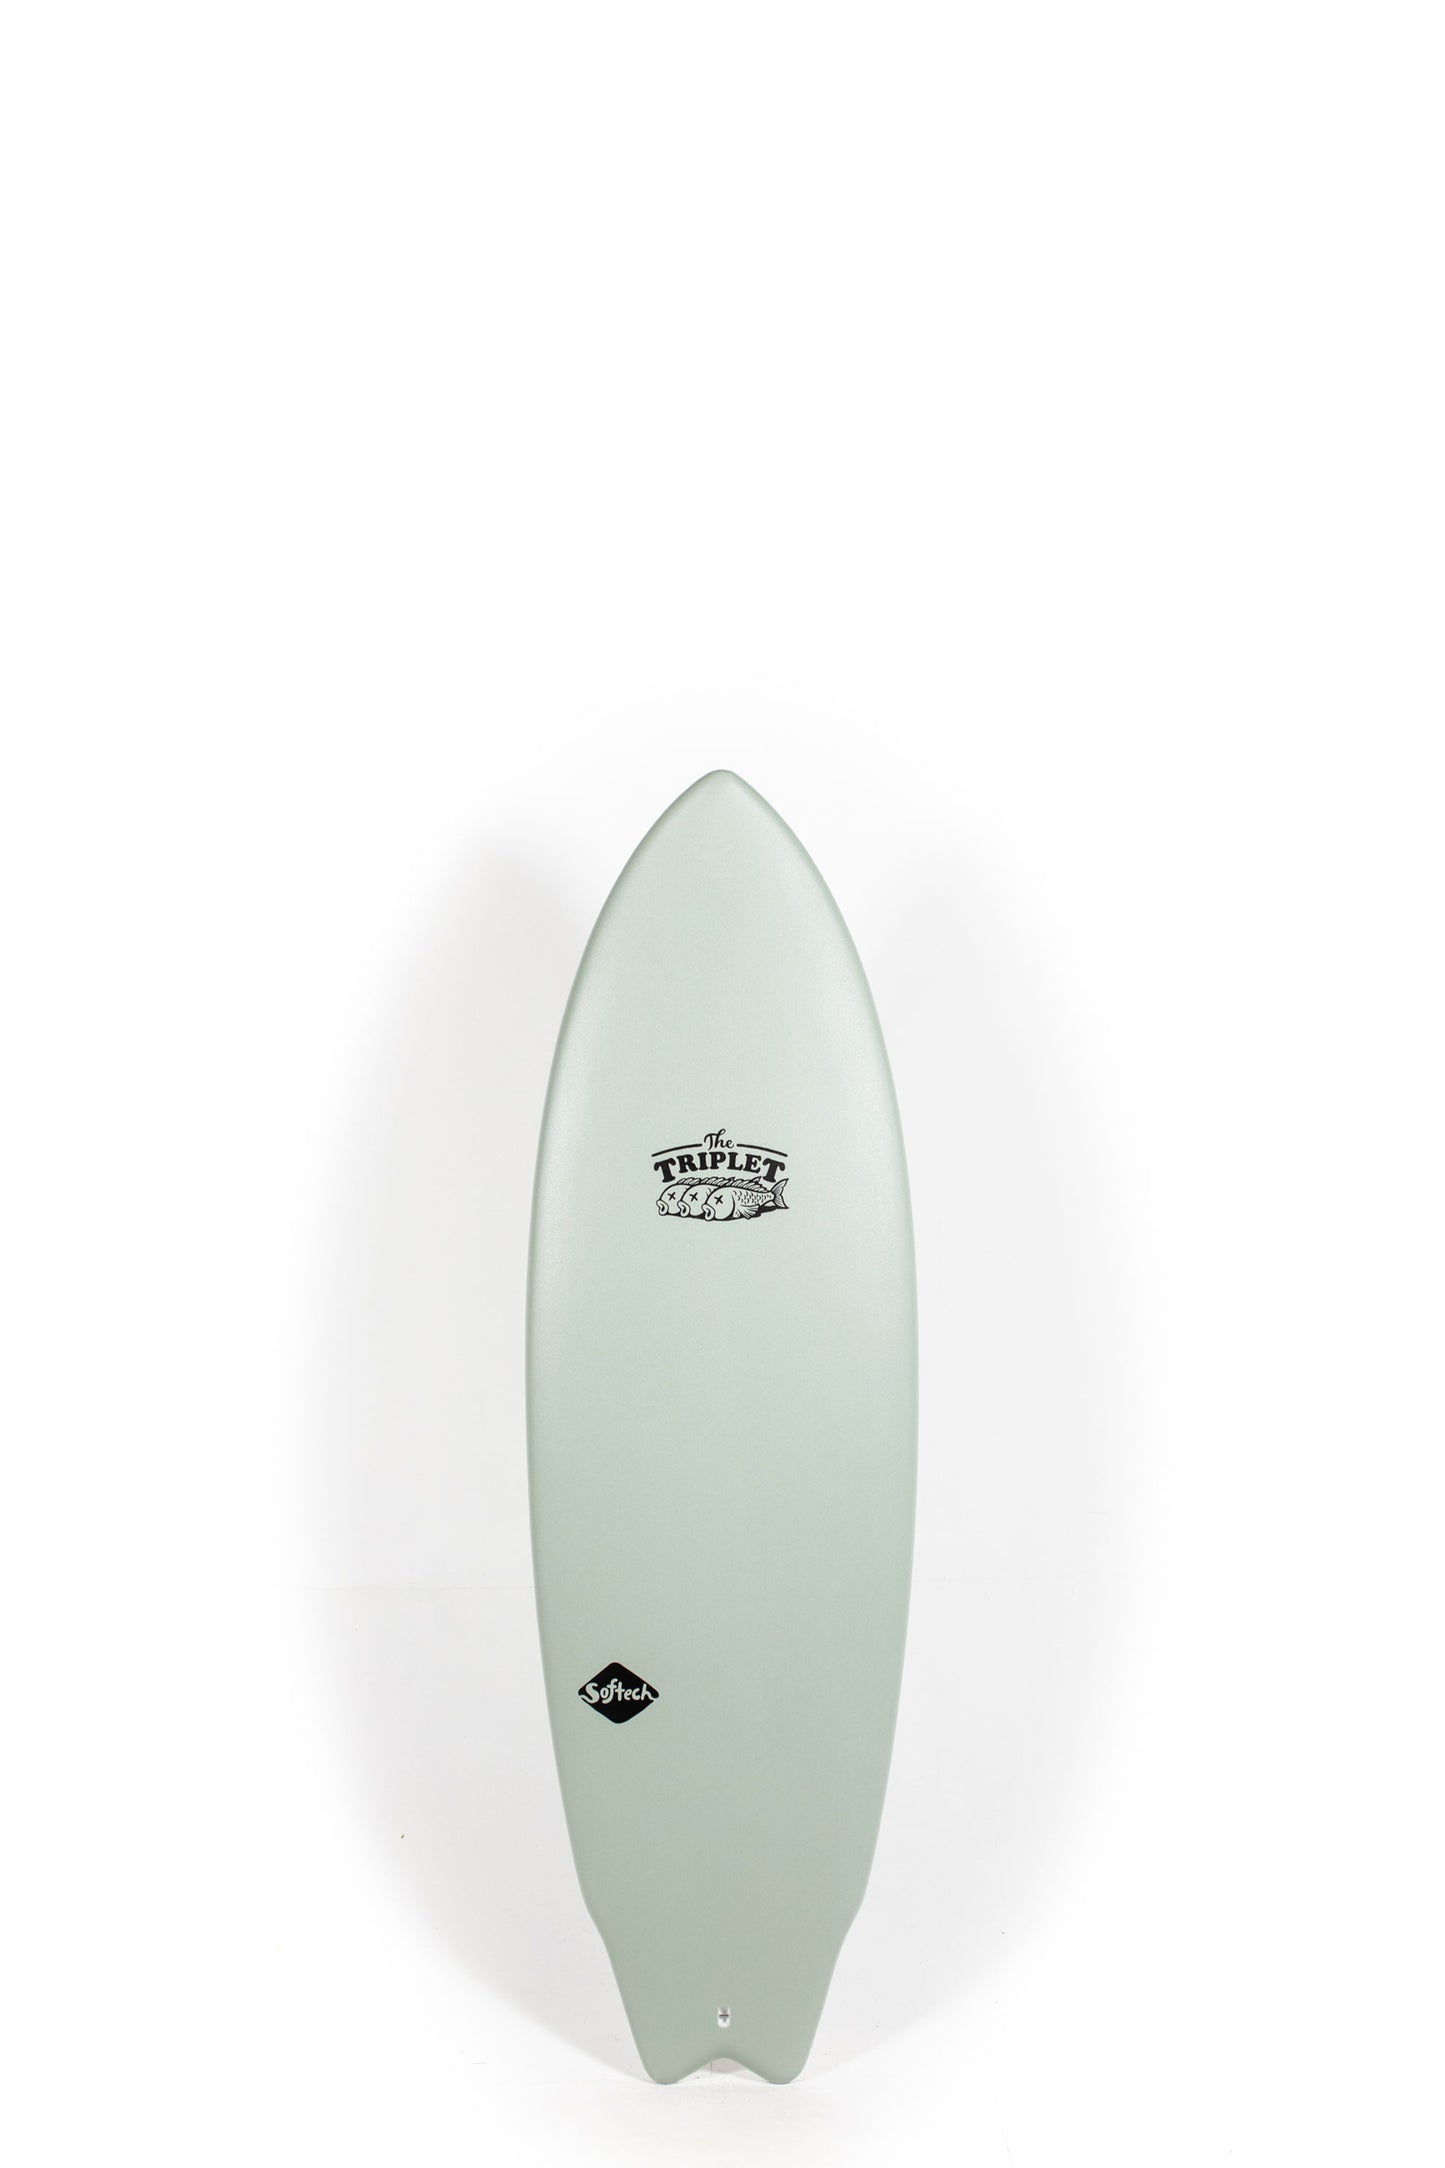 Pukas Surf Shop - SOFTECH - THE TRIPLET 5'8"